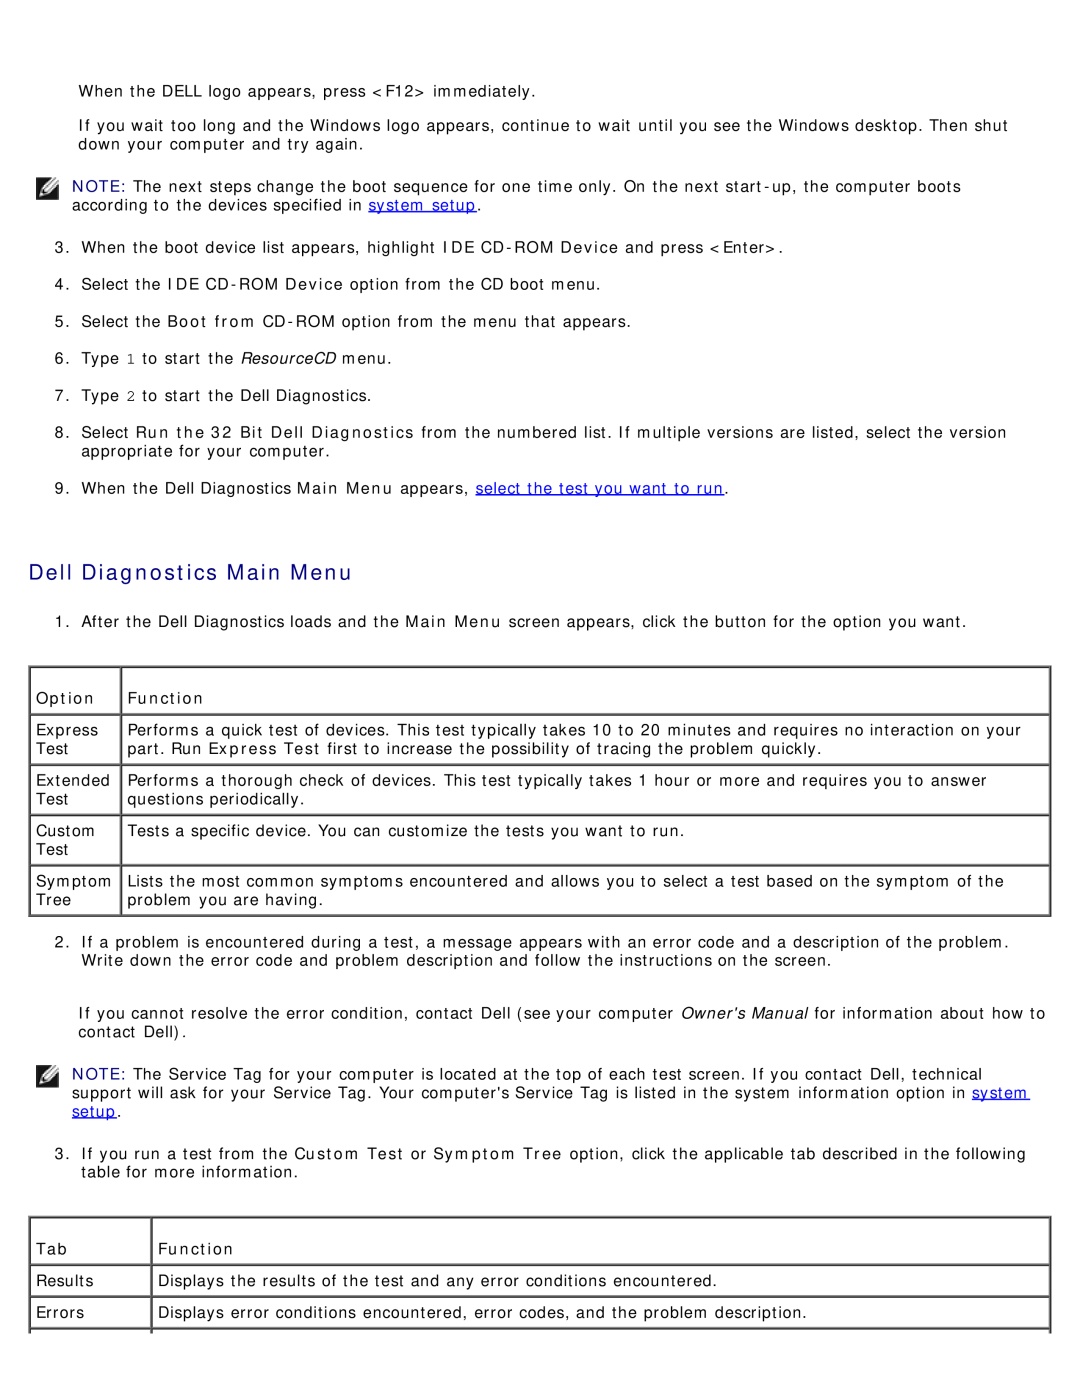 Dell DCSM manual Dell Diagnostics Main Menu, Option, Function 